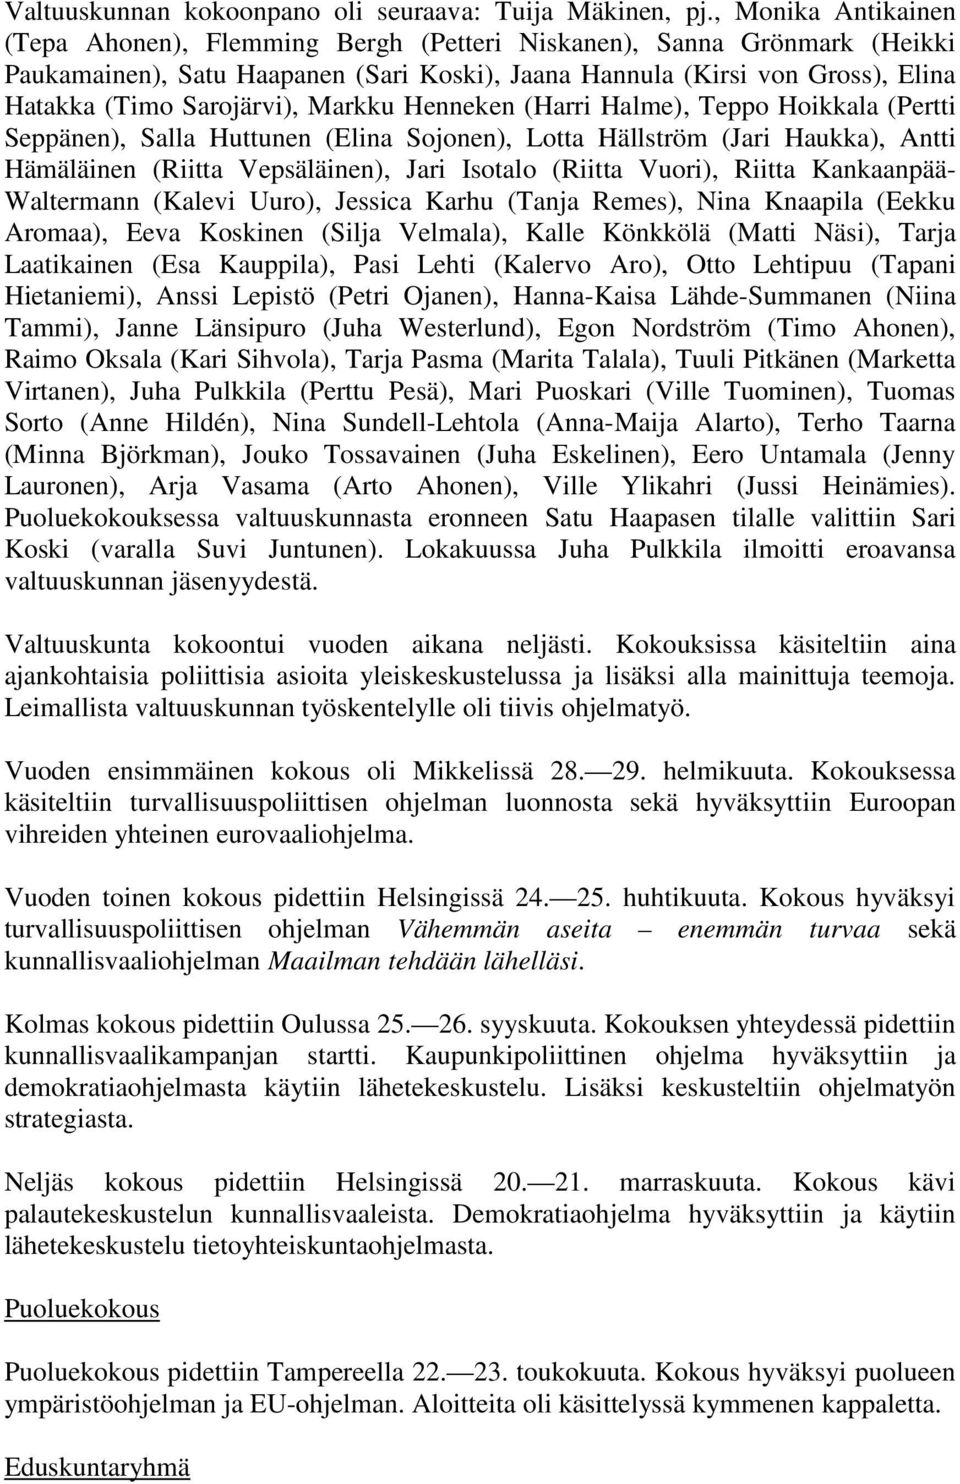 Markku Henneken (Harri Halme), Teppo Hoikkala (Pertti Seppänen), Salla Huttunen (Elina Sojonen), Lotta Hällström (Jari Haukka), Antti Hämäläinen (Riitta Vepsäläinen), Jari Isotalo (Riitta Vuori),